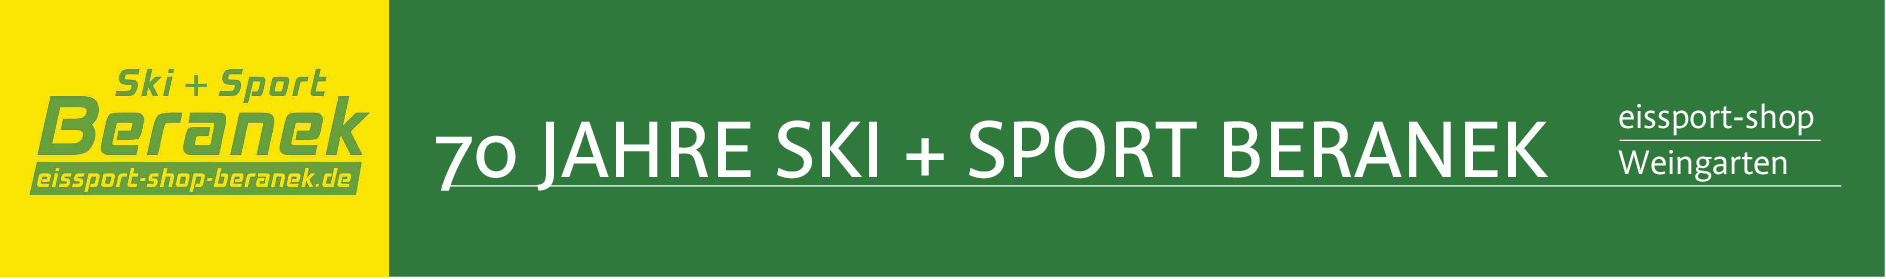 Ski + Sport Beranek in Weingarten: Sportlich in dritter Generation